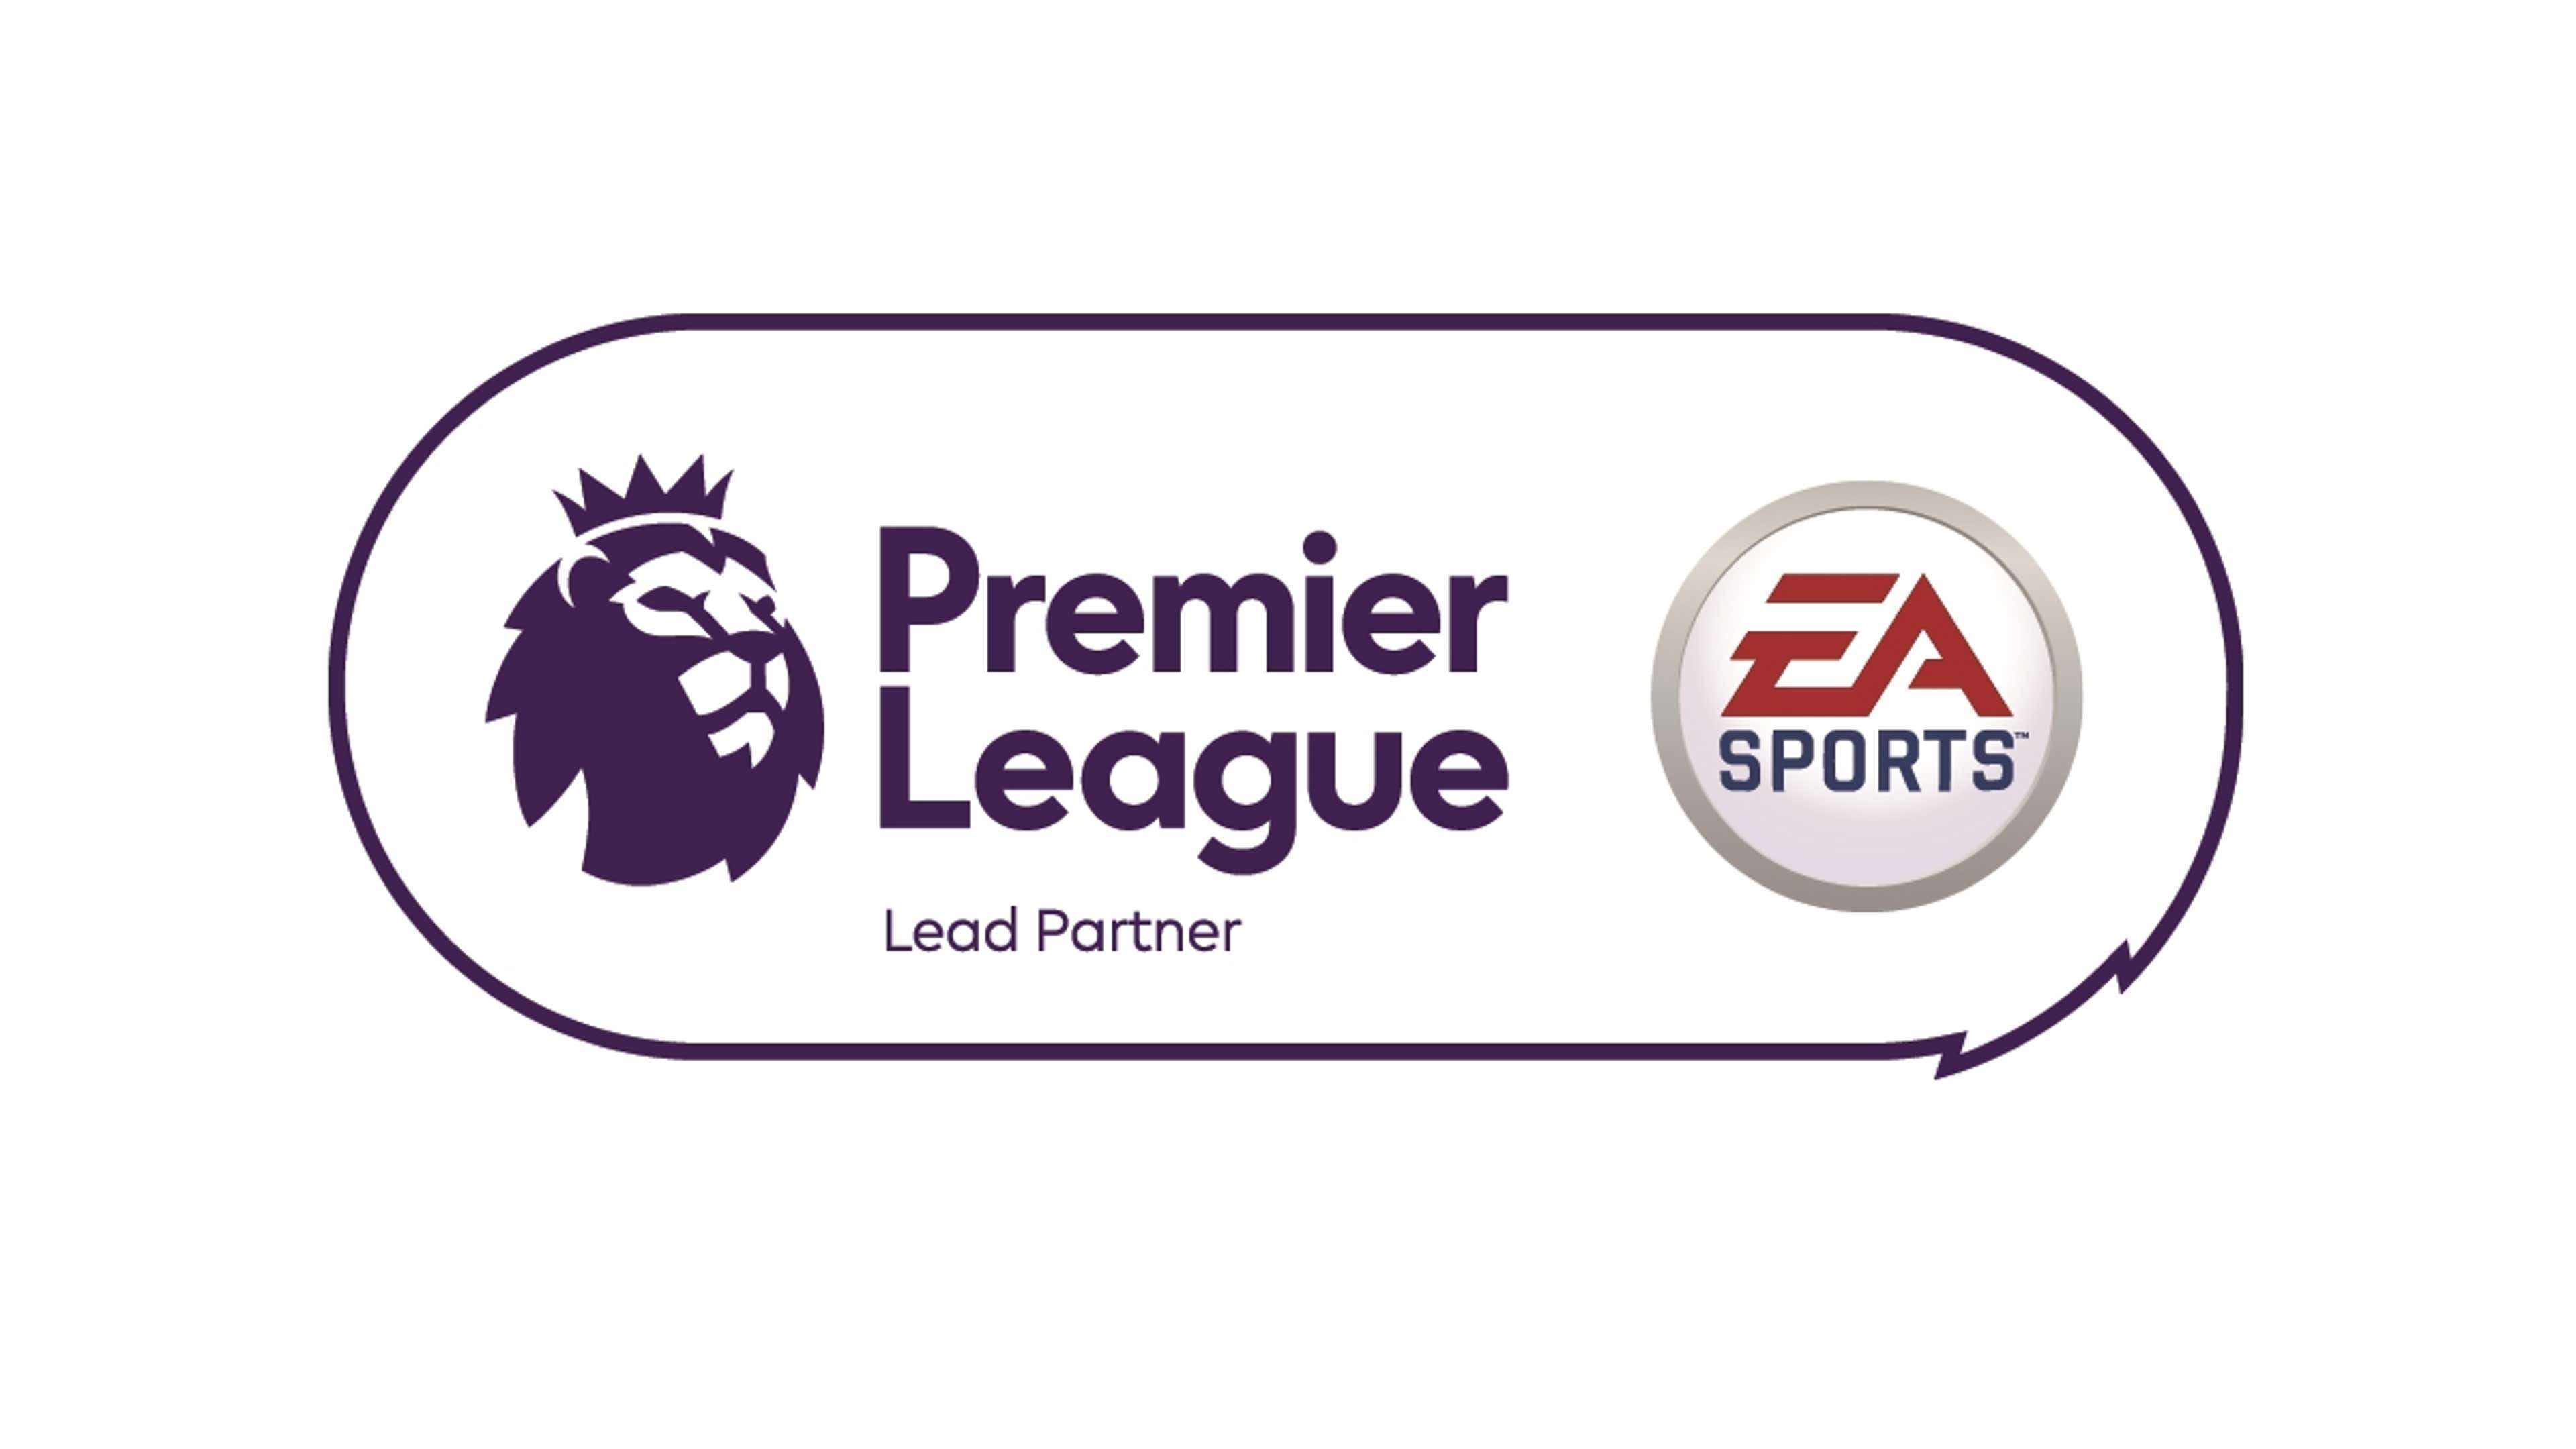 Premier League EA Sports Lead Partner